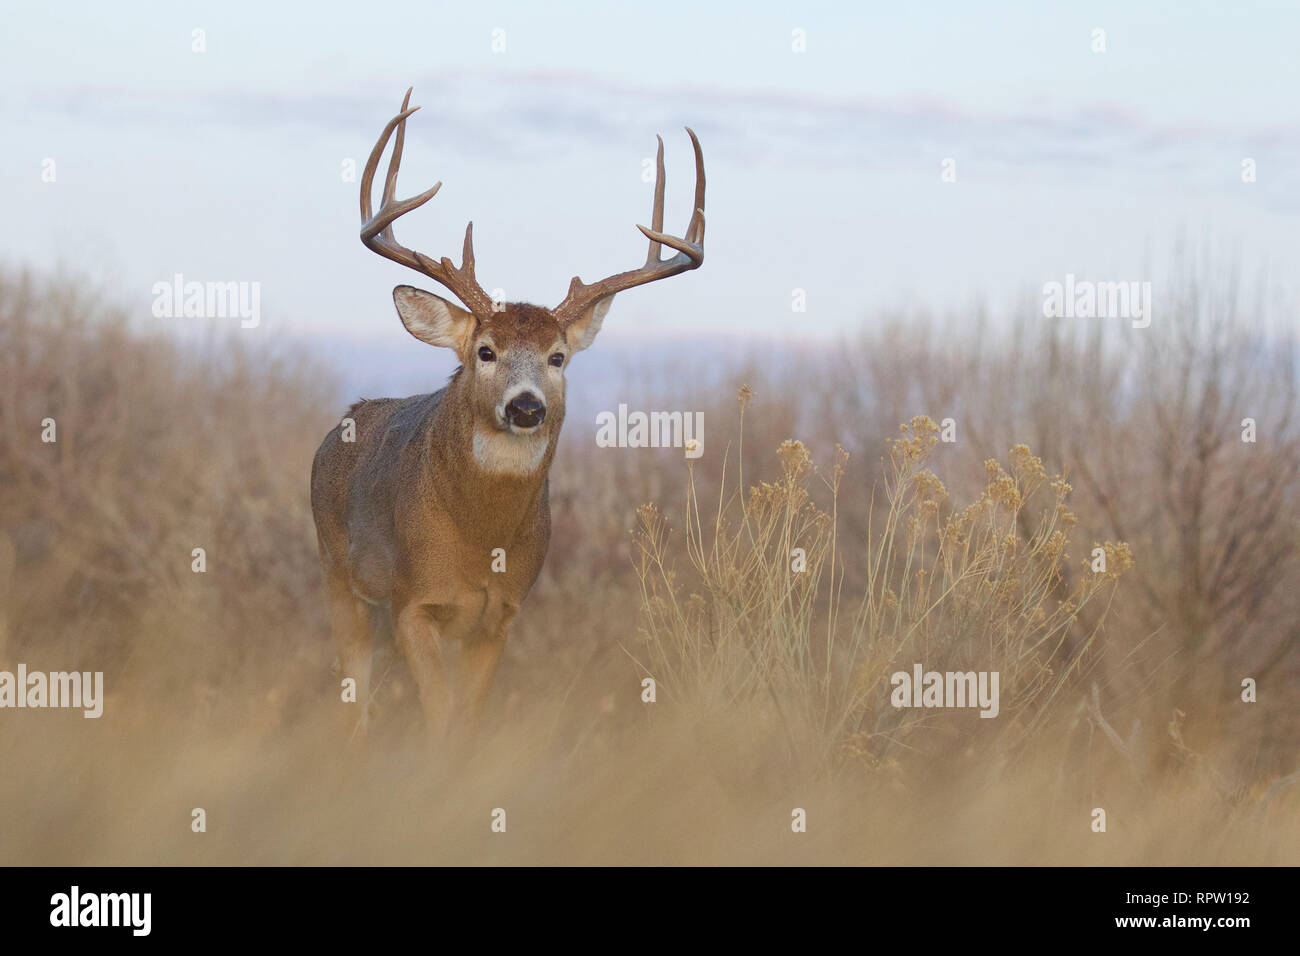 Whitetail Deer buck walking through midwestern habitat during deer hunting season Stock Photo